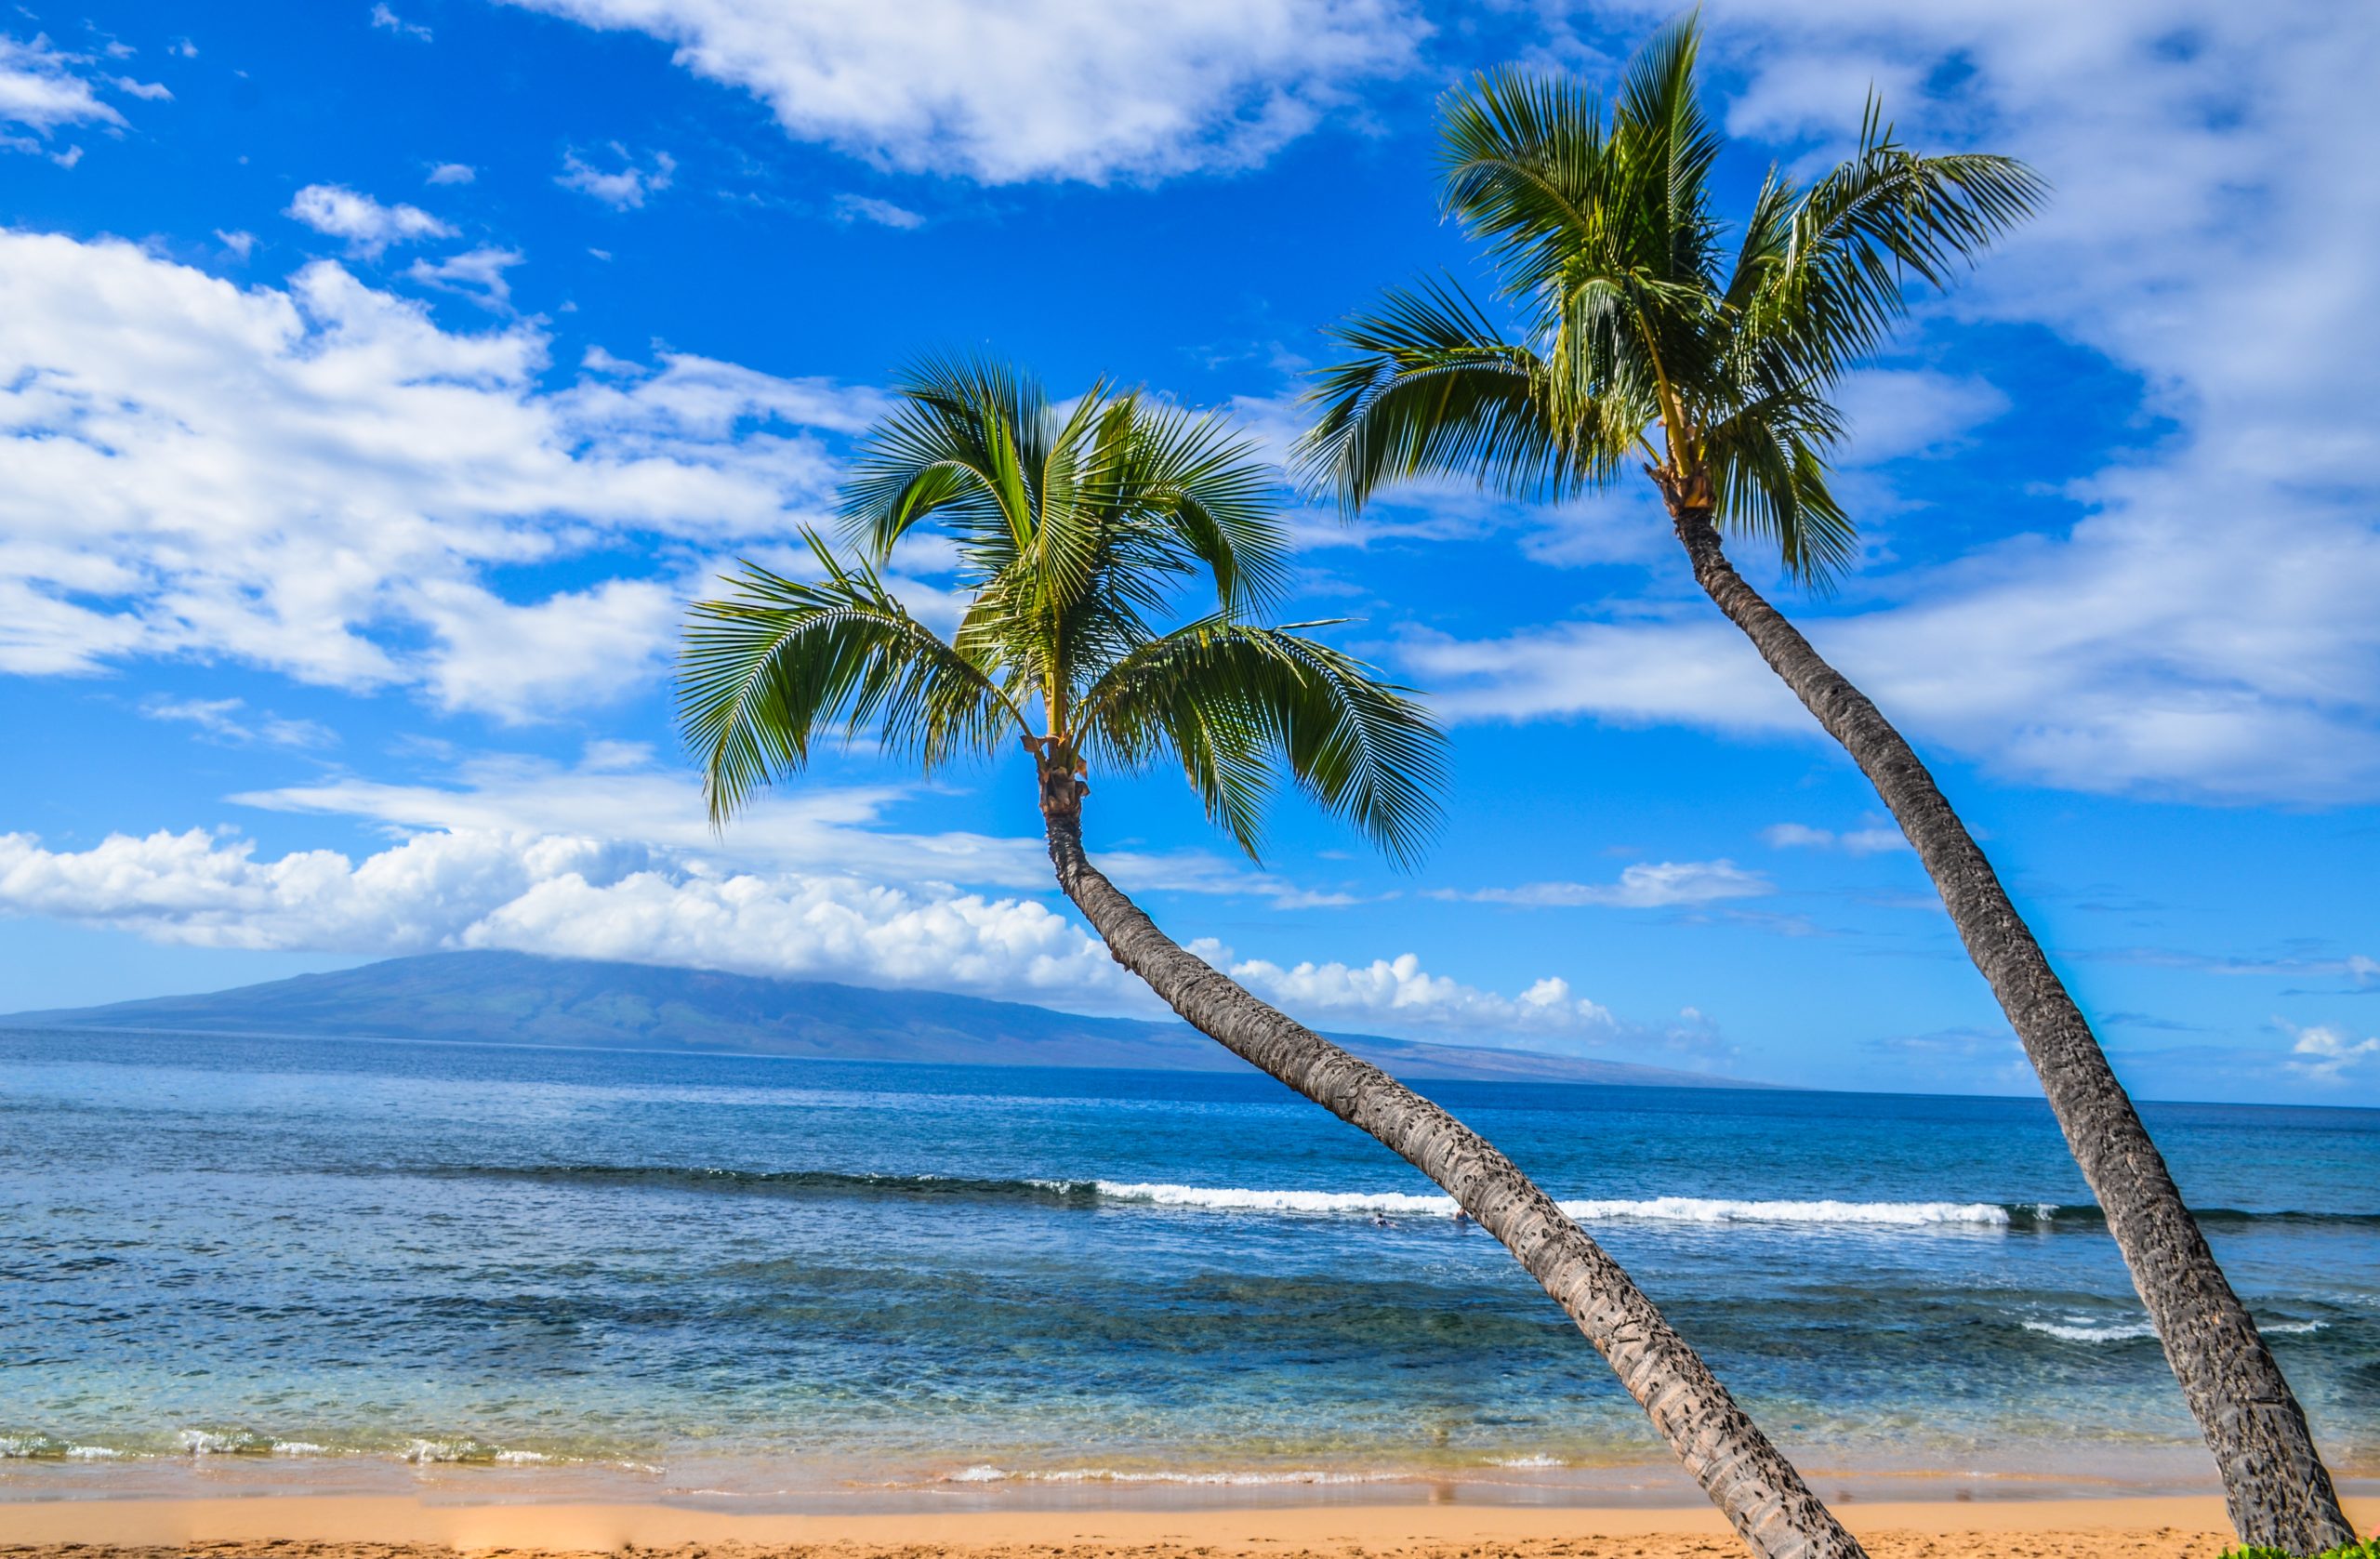 Bãi biển Hawaii - Bãi biển Kaanapali còn có các khu nghỉ dưỡng sang trọng bên bờ biển, sân golf, quán rượu, nhà hàng và bãi biển cát trắng nắng vàng